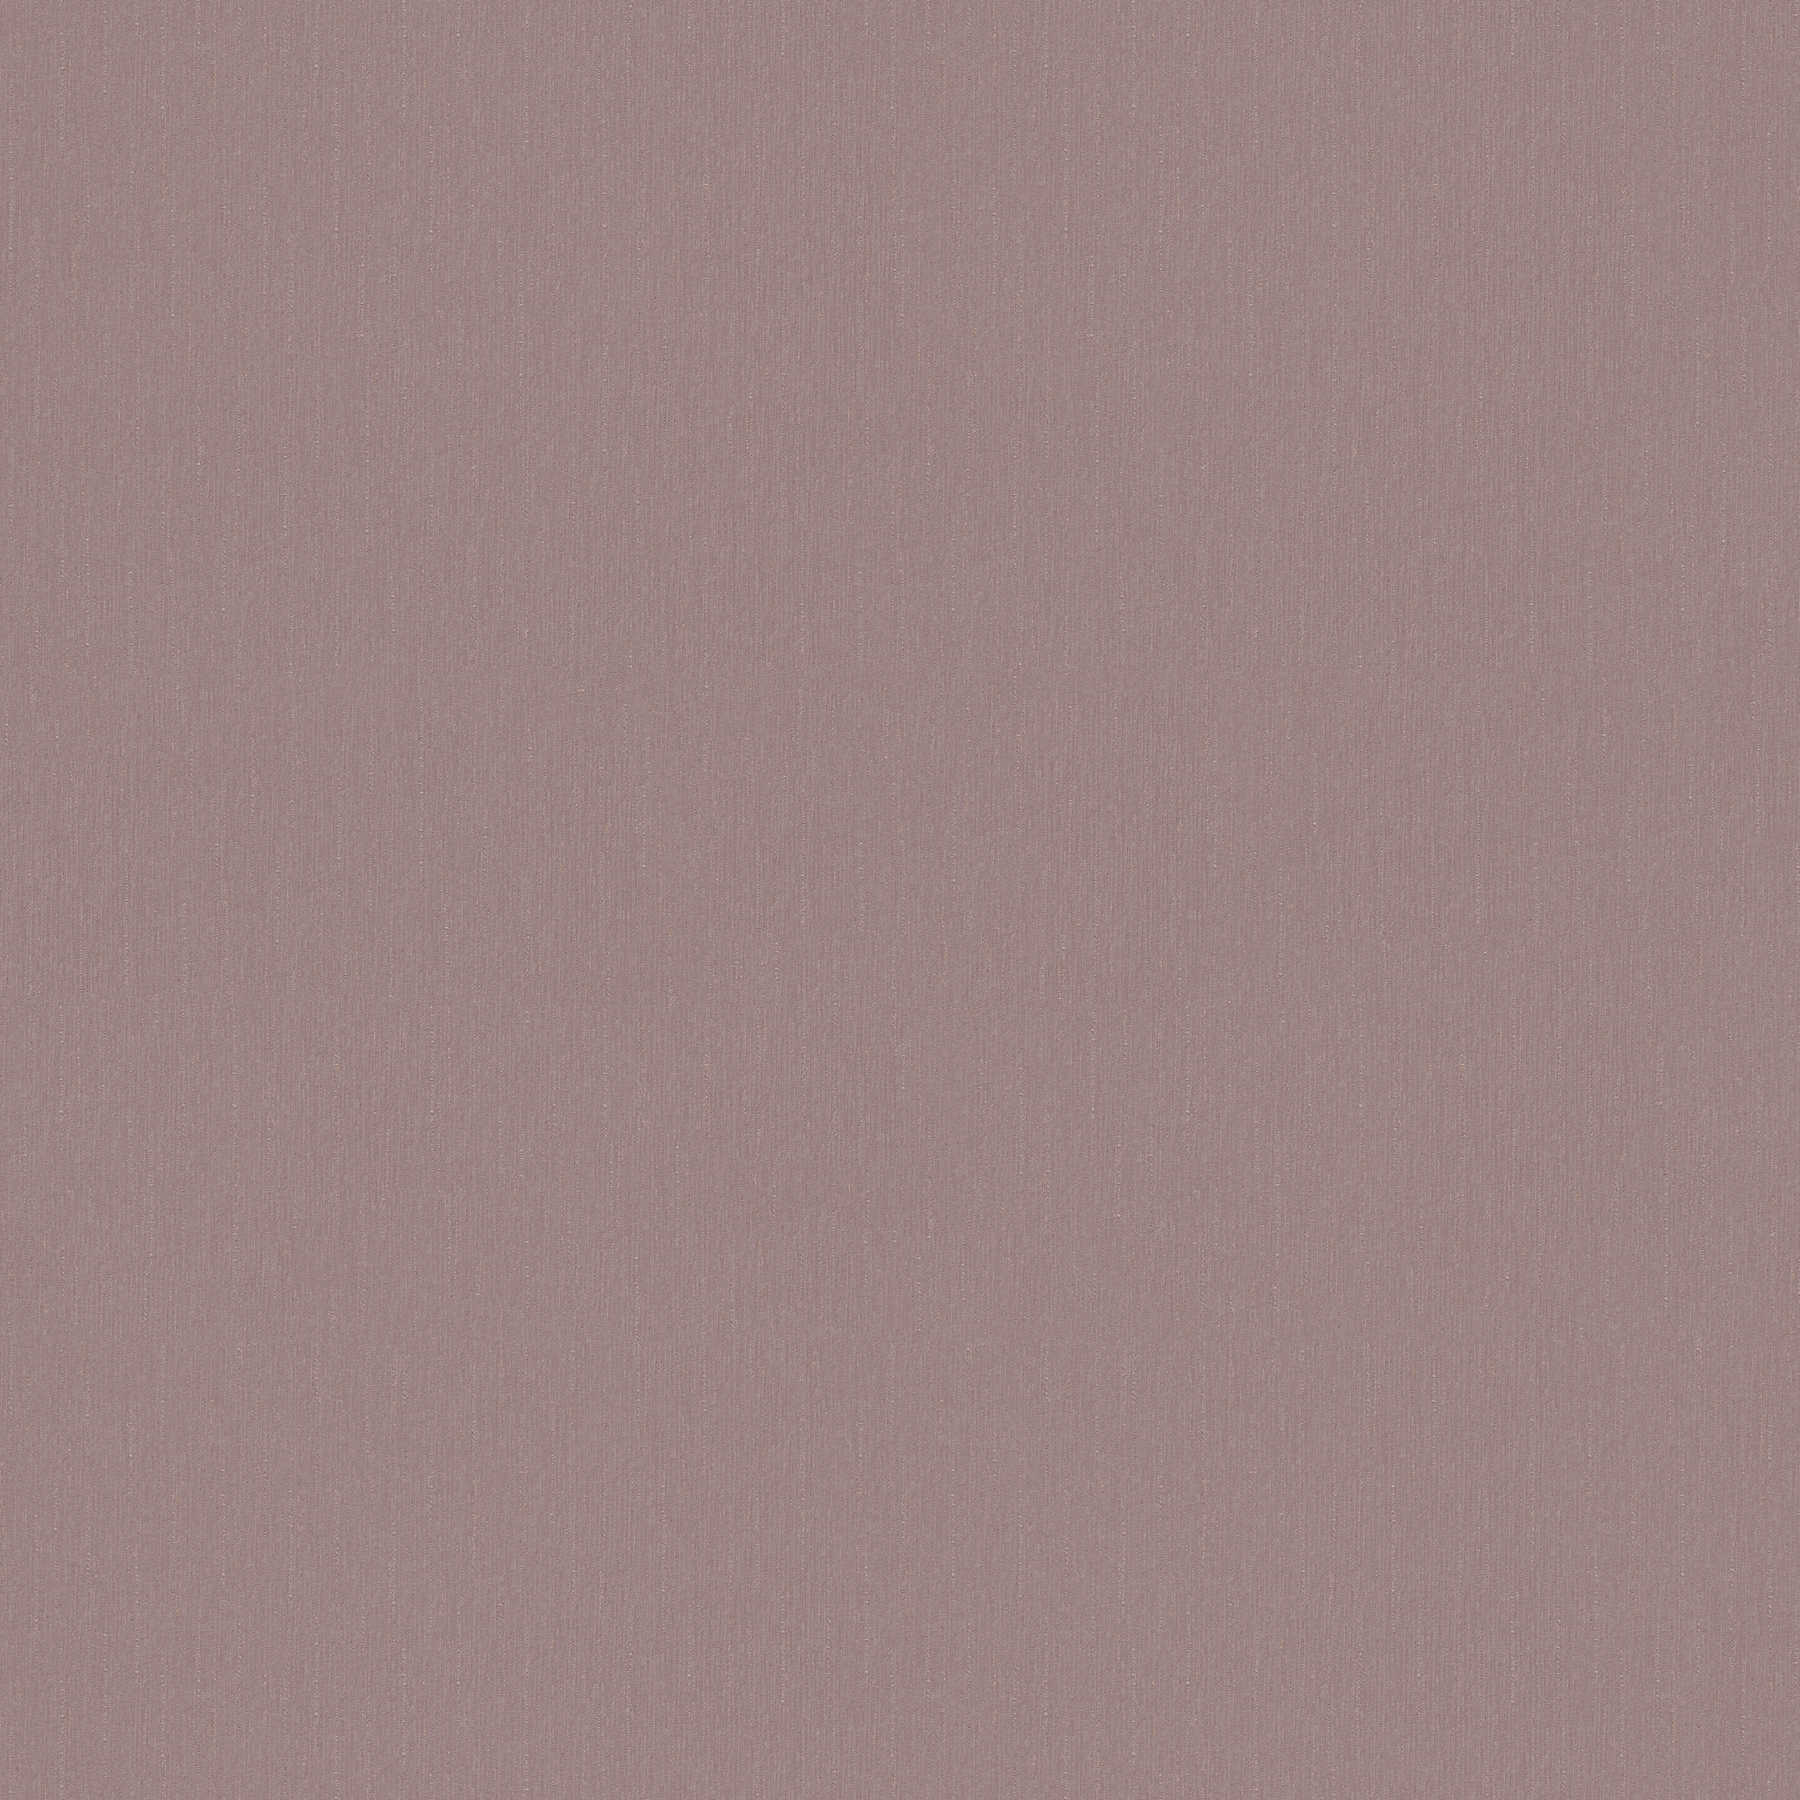 Carta da parati grigio lilla liscia e opaca - grigio, rosa
